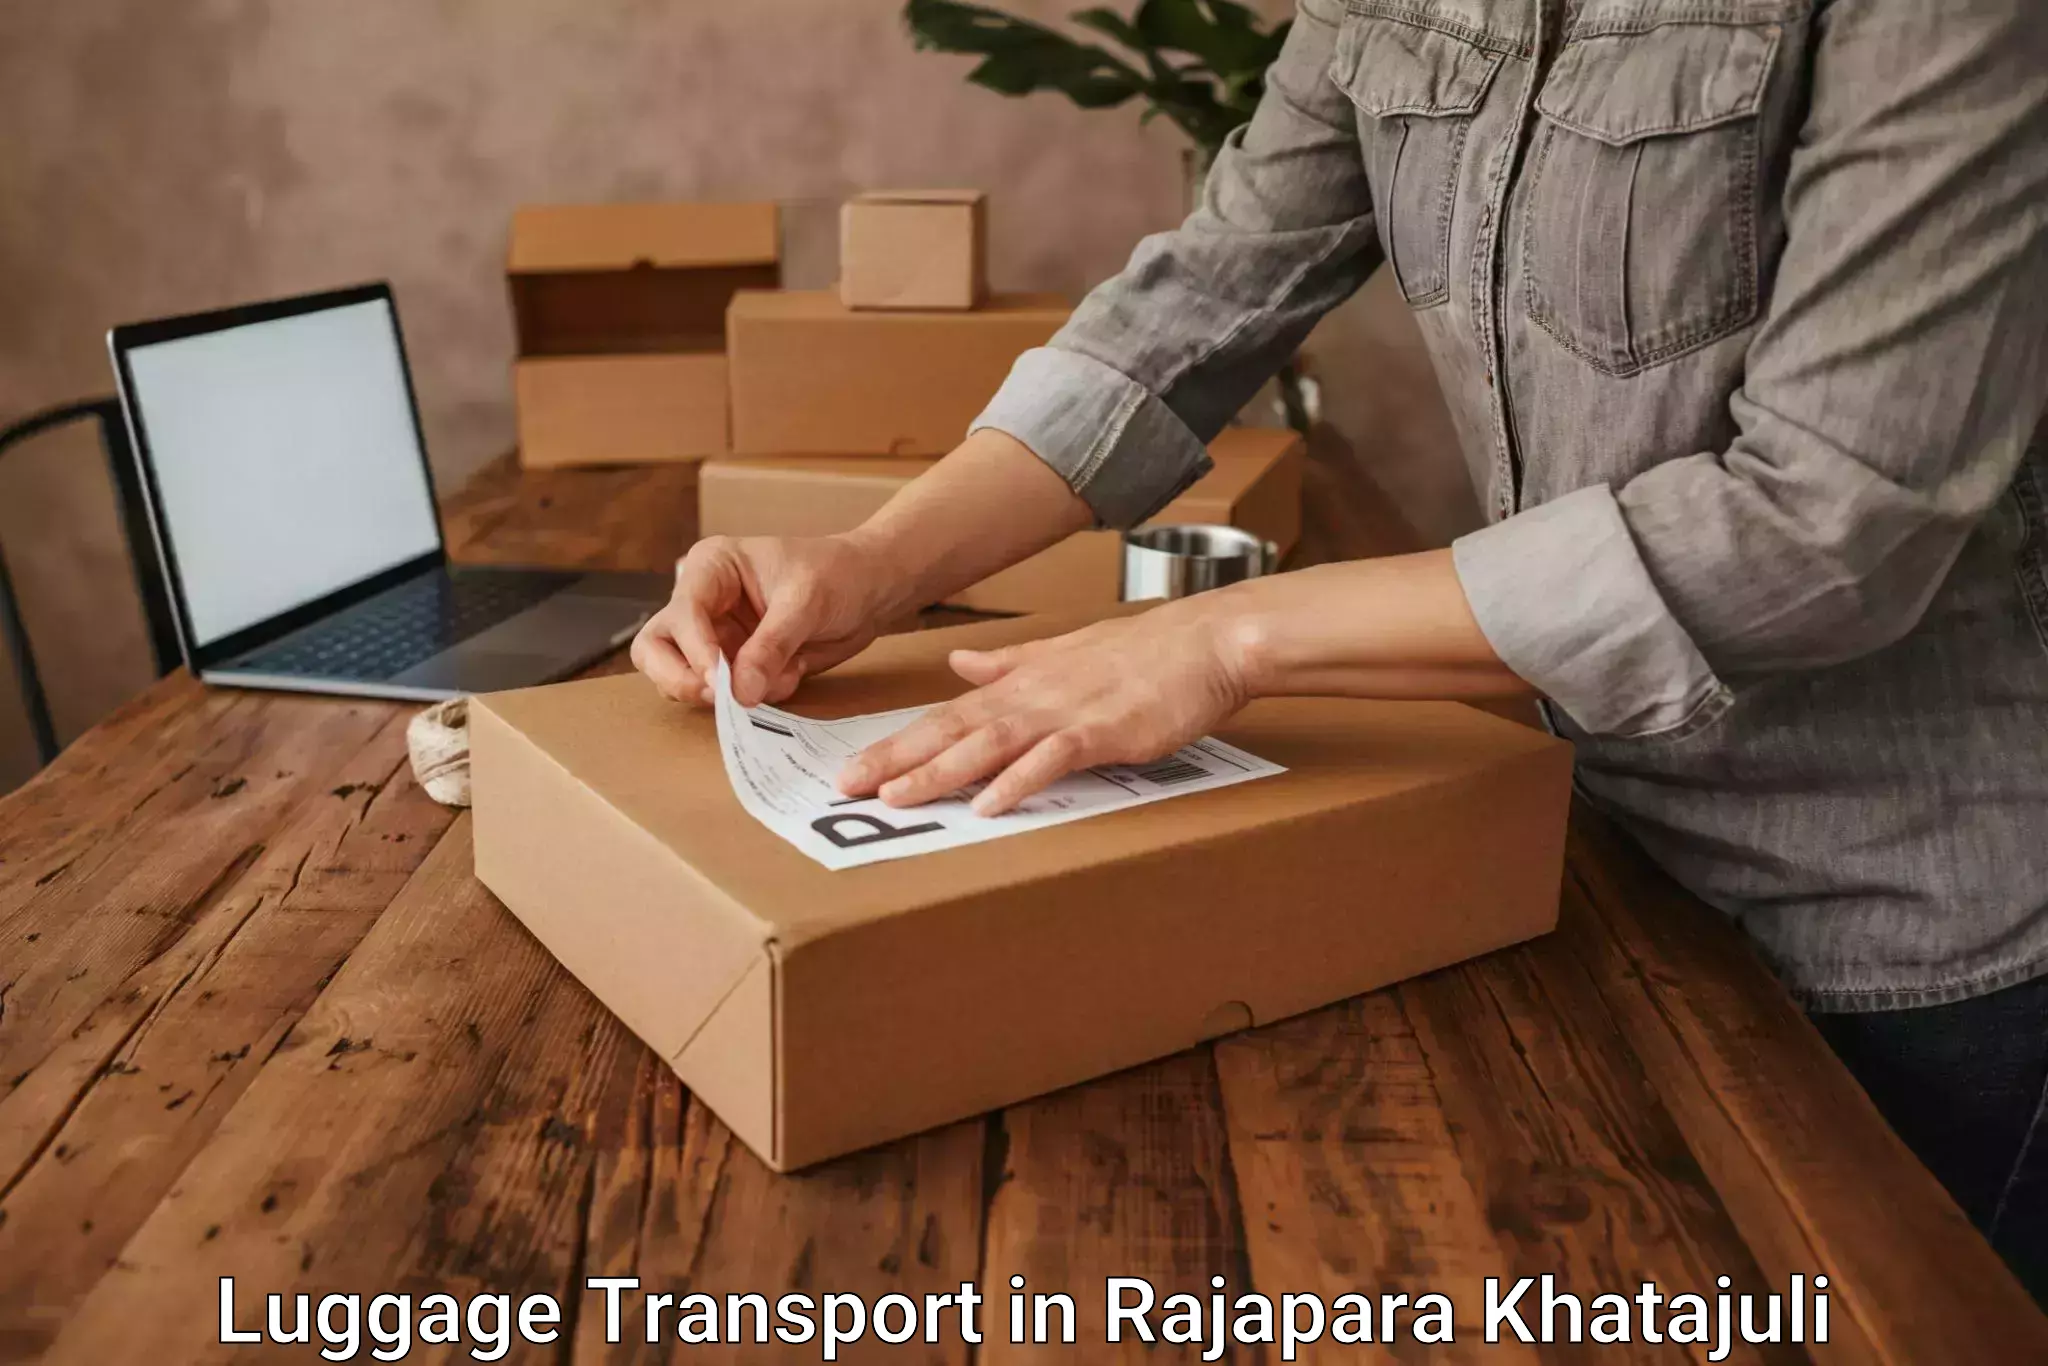 Luggage transport pricing in Rajapara Khatajuli